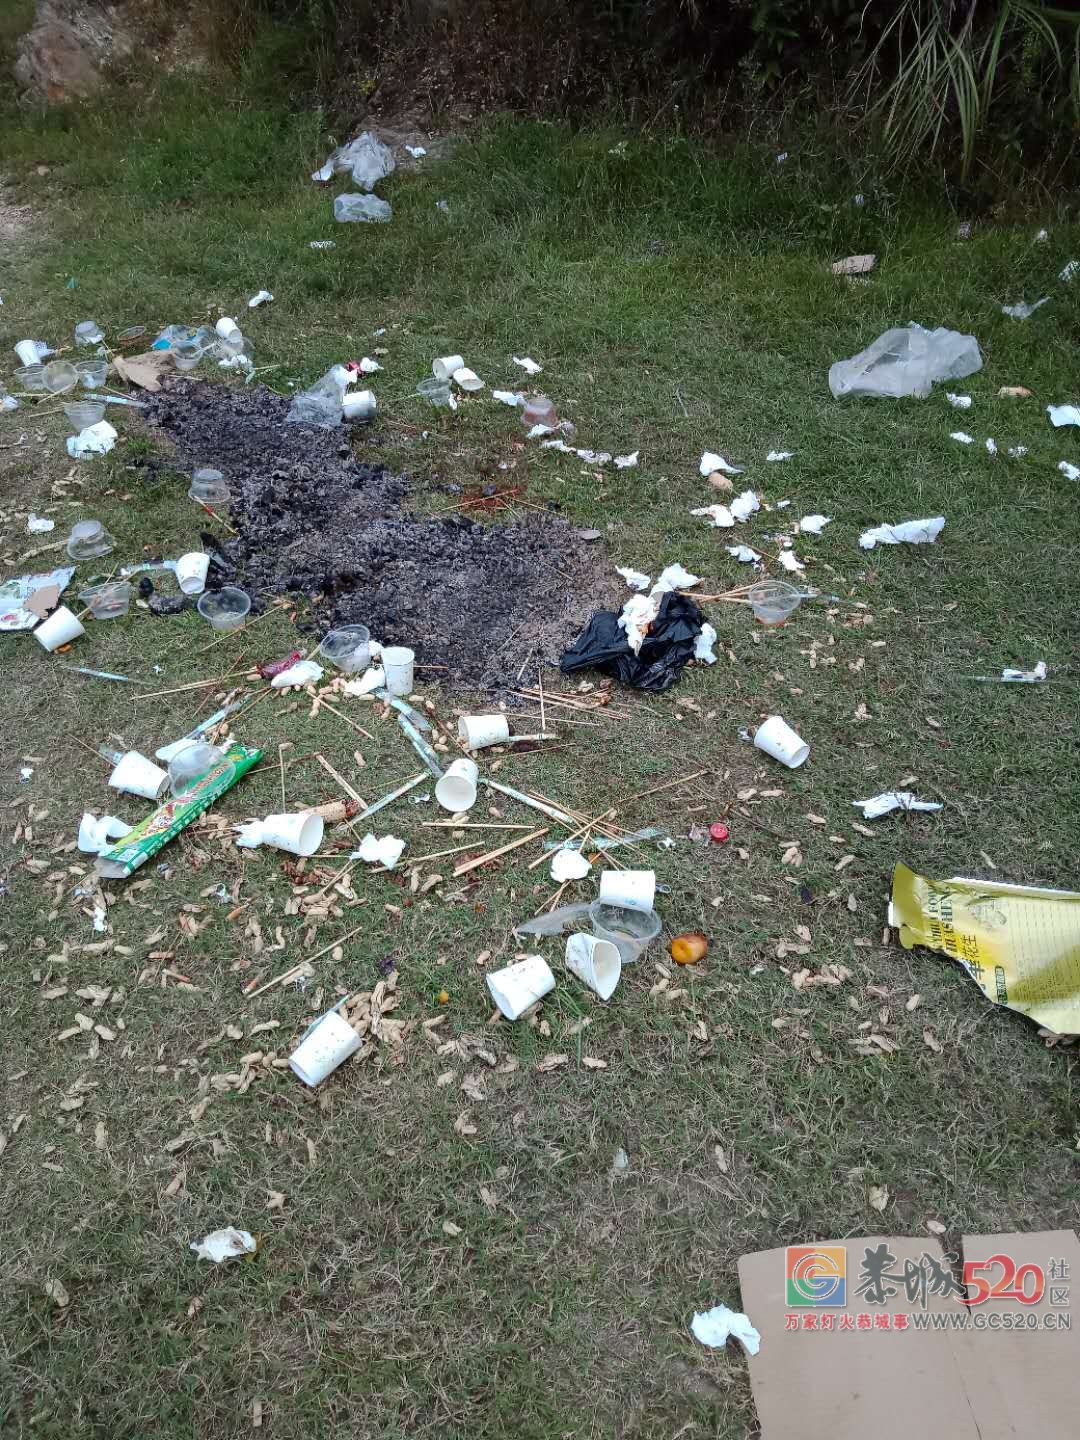 栗木金钱洞水库又被扔了一地的垃圾891 / 作者:恭城是我家 / 帖子ID:266065